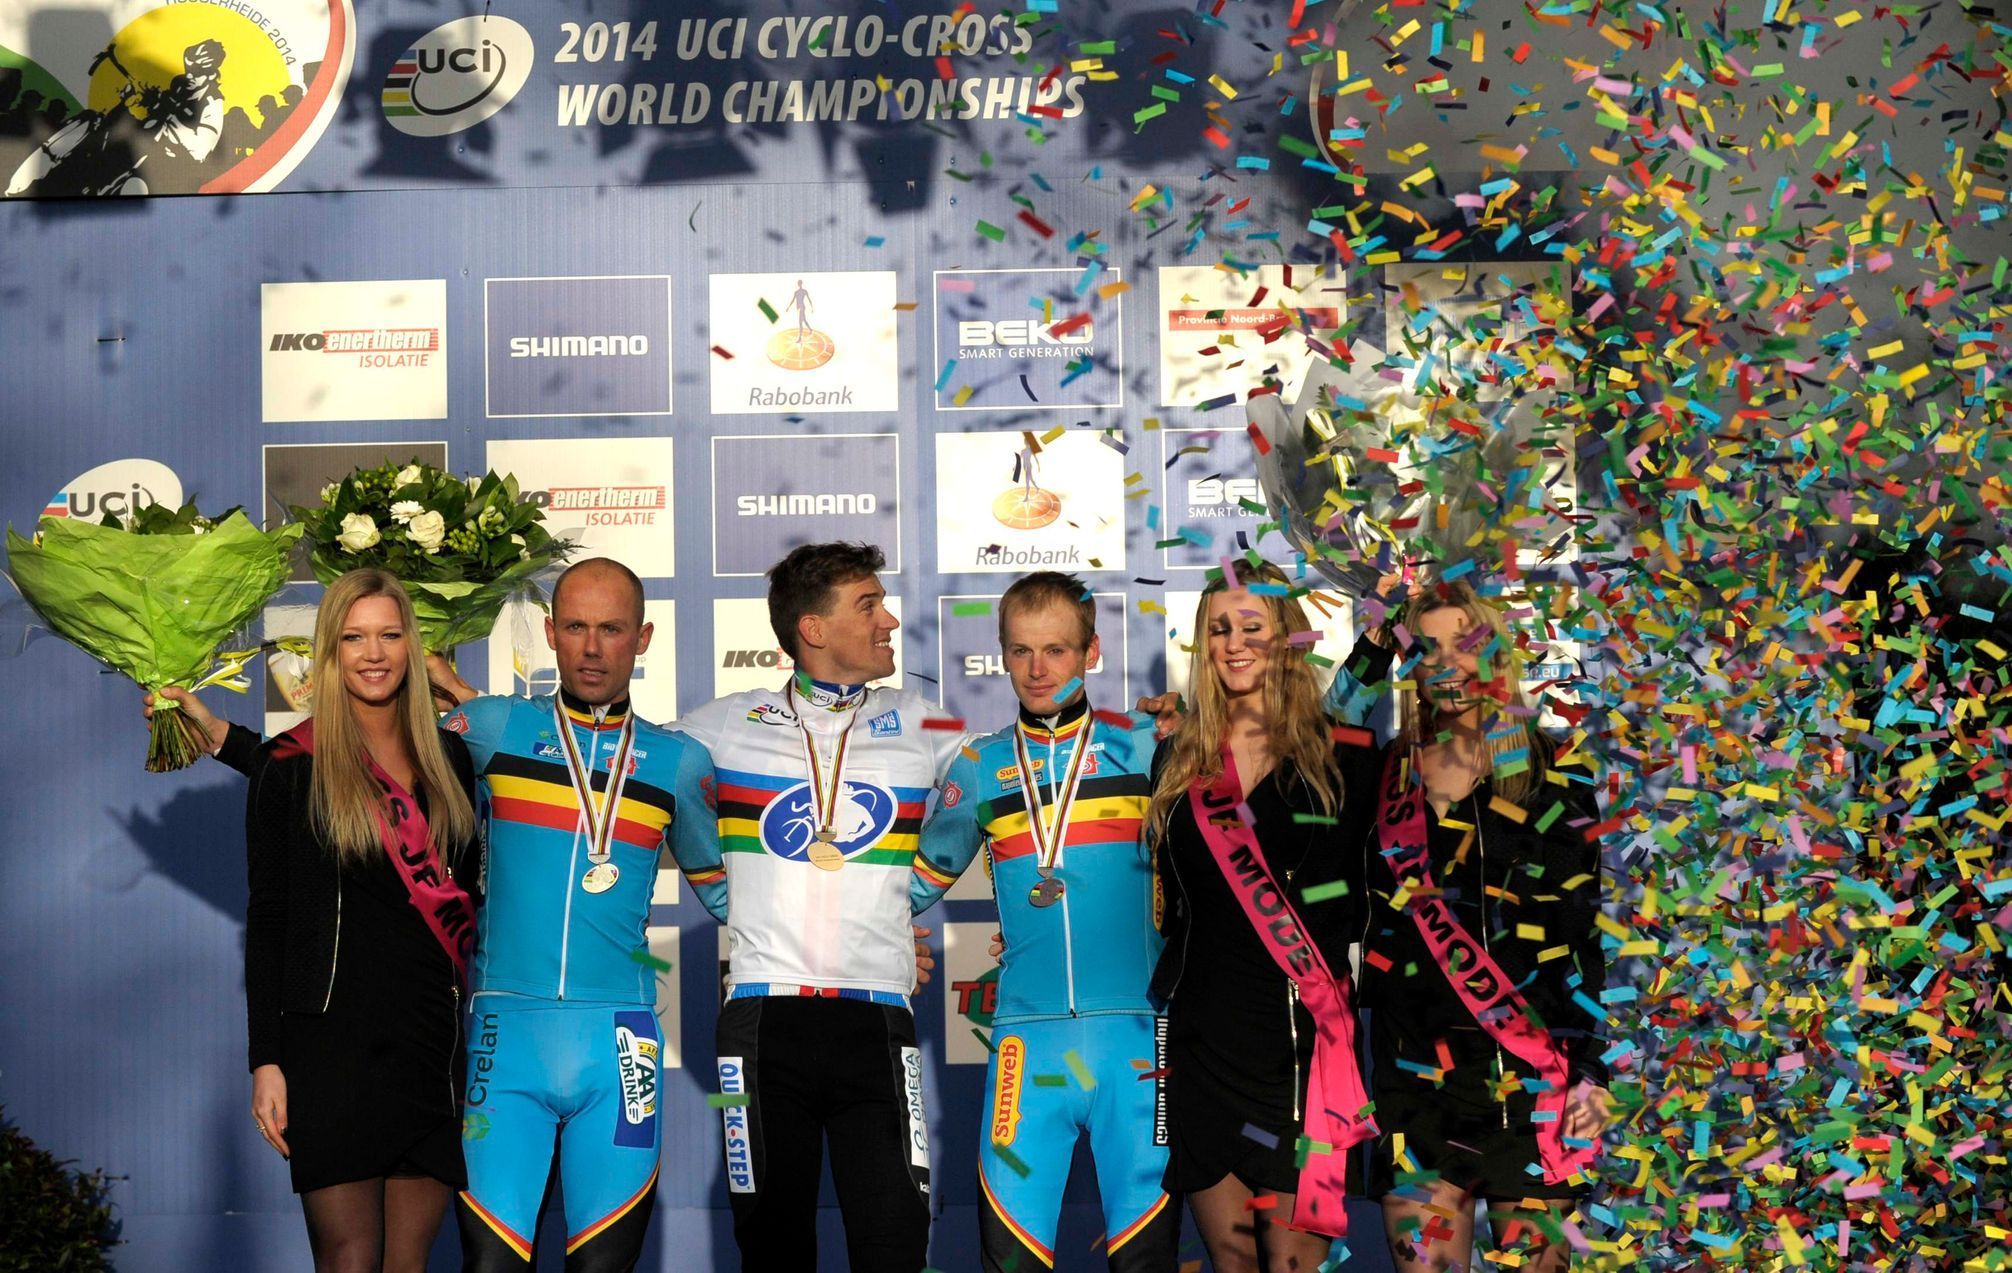 MS v cyklokrosu 2014 (Zdeněk Štybar a Sven Nijs)